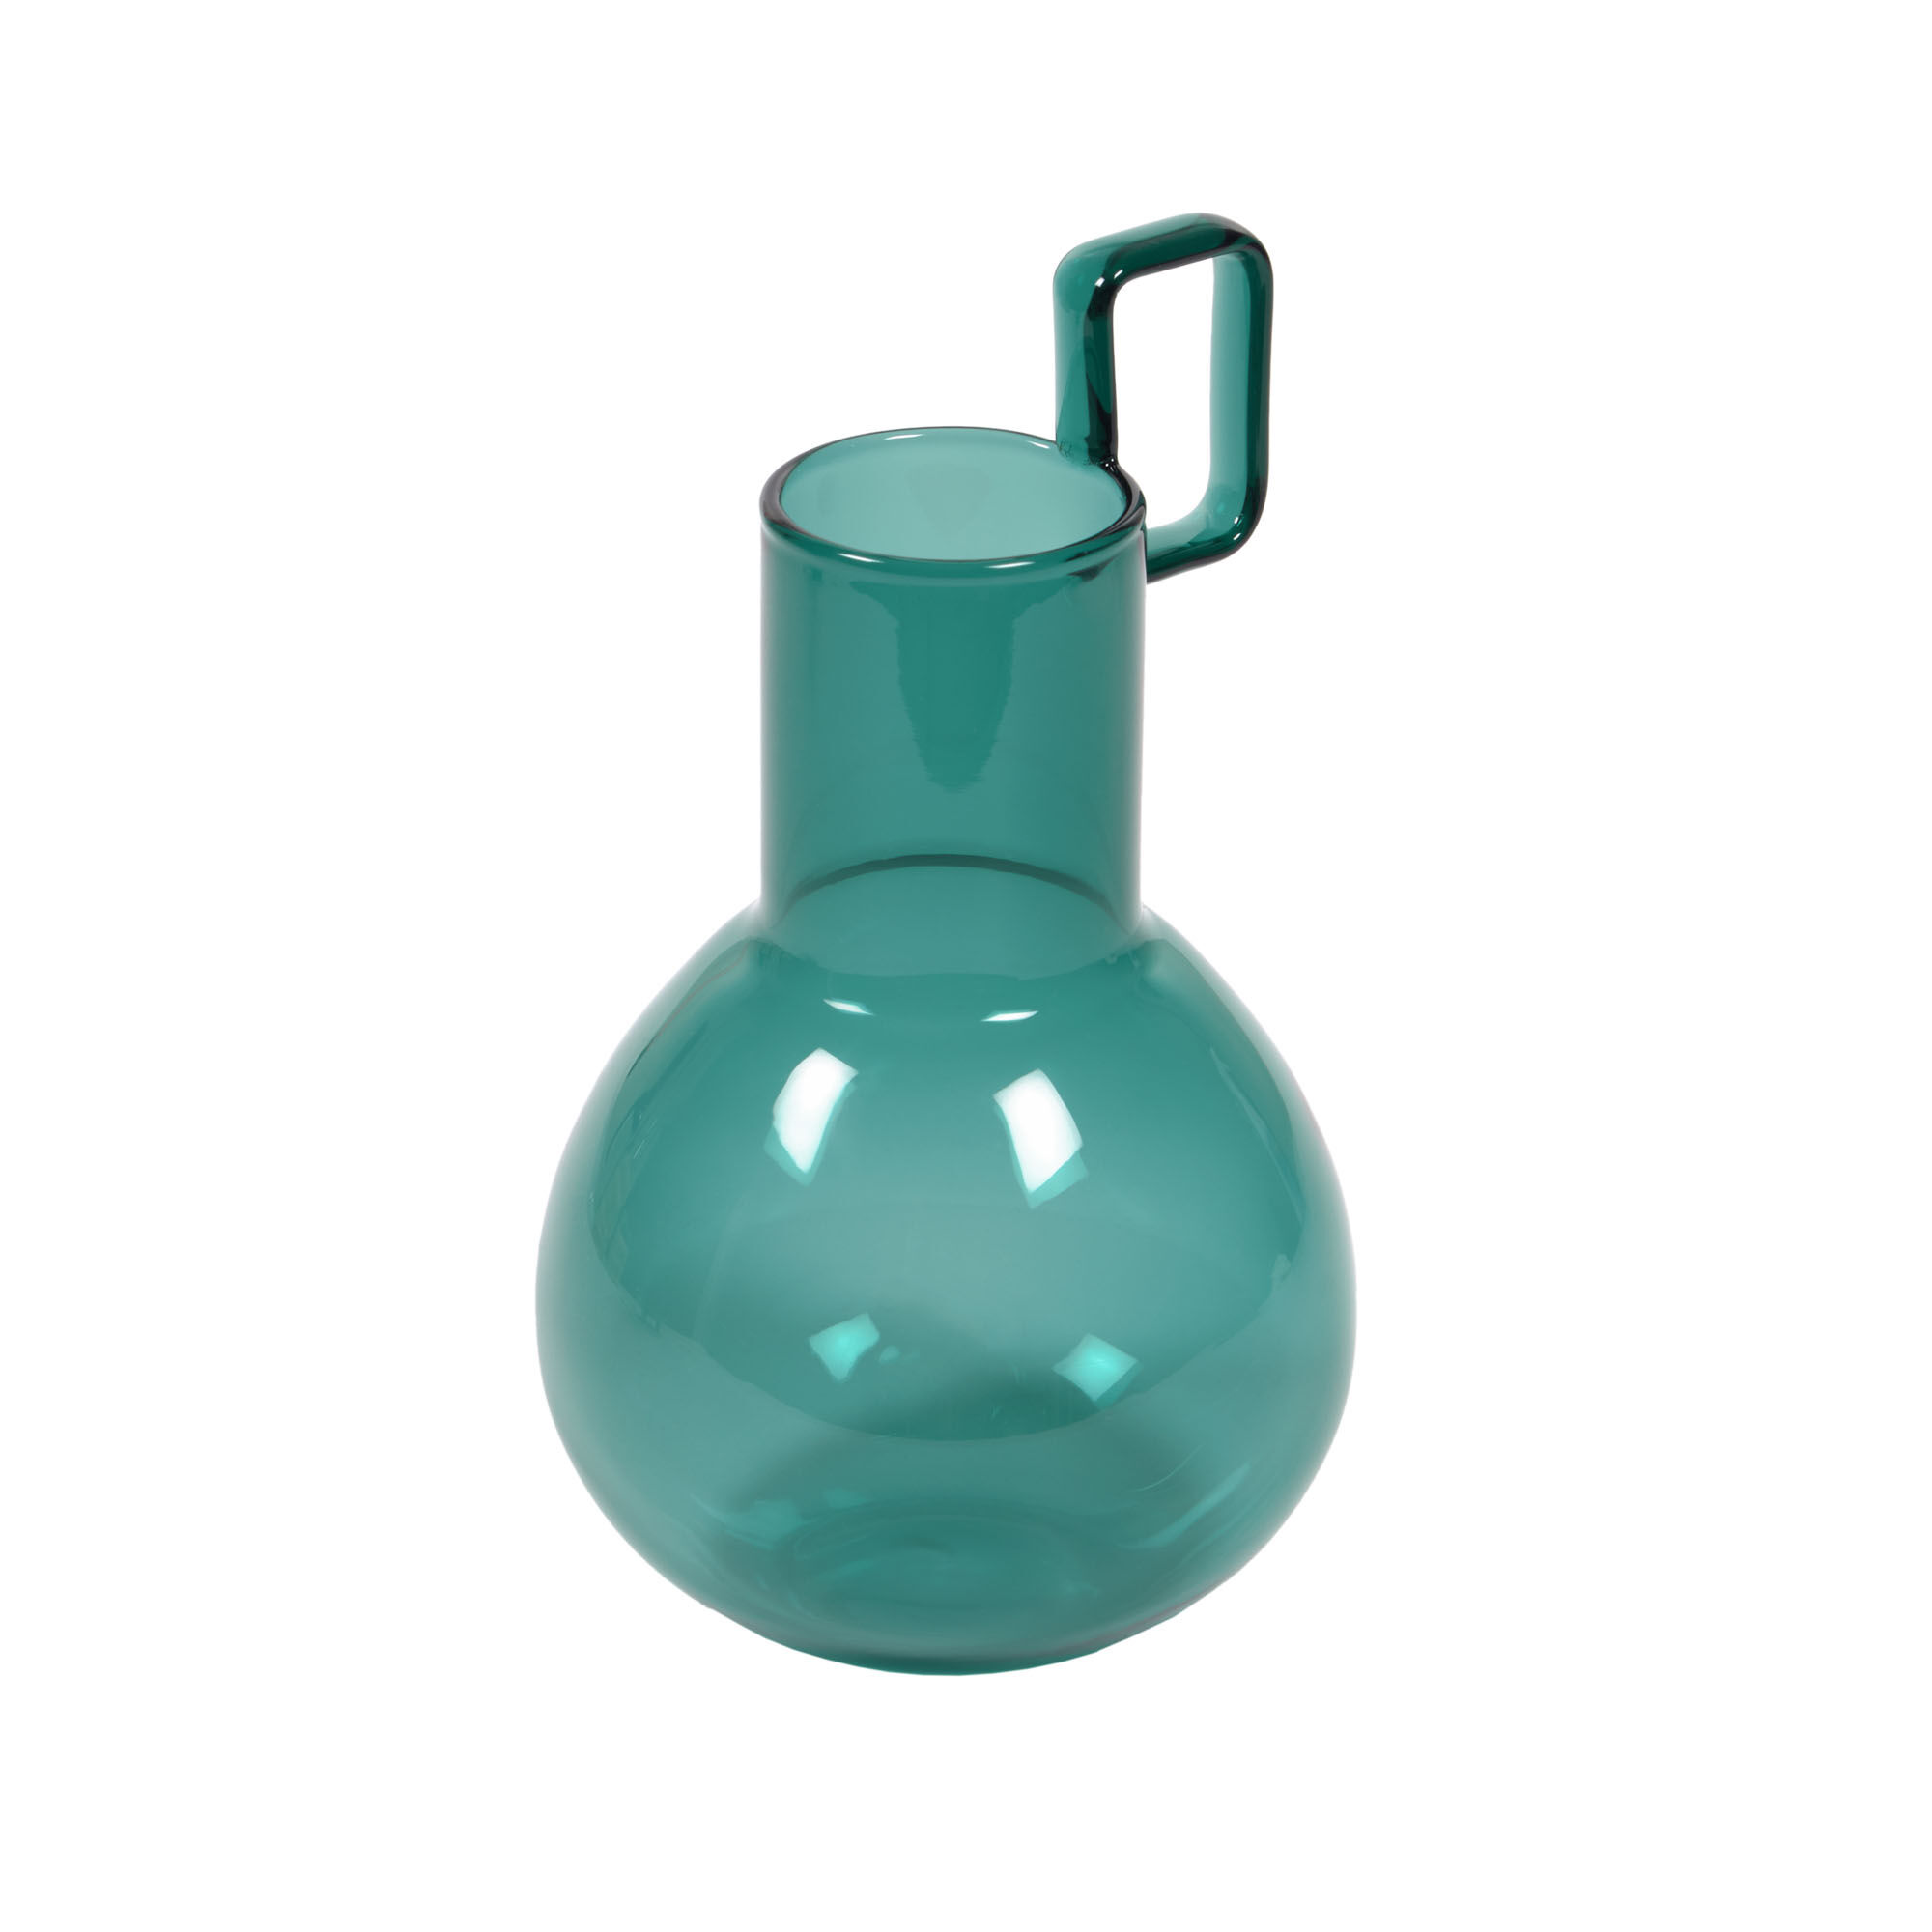 Kave Home Vaso Iarena vaso in vetro turchese 16,5 cm